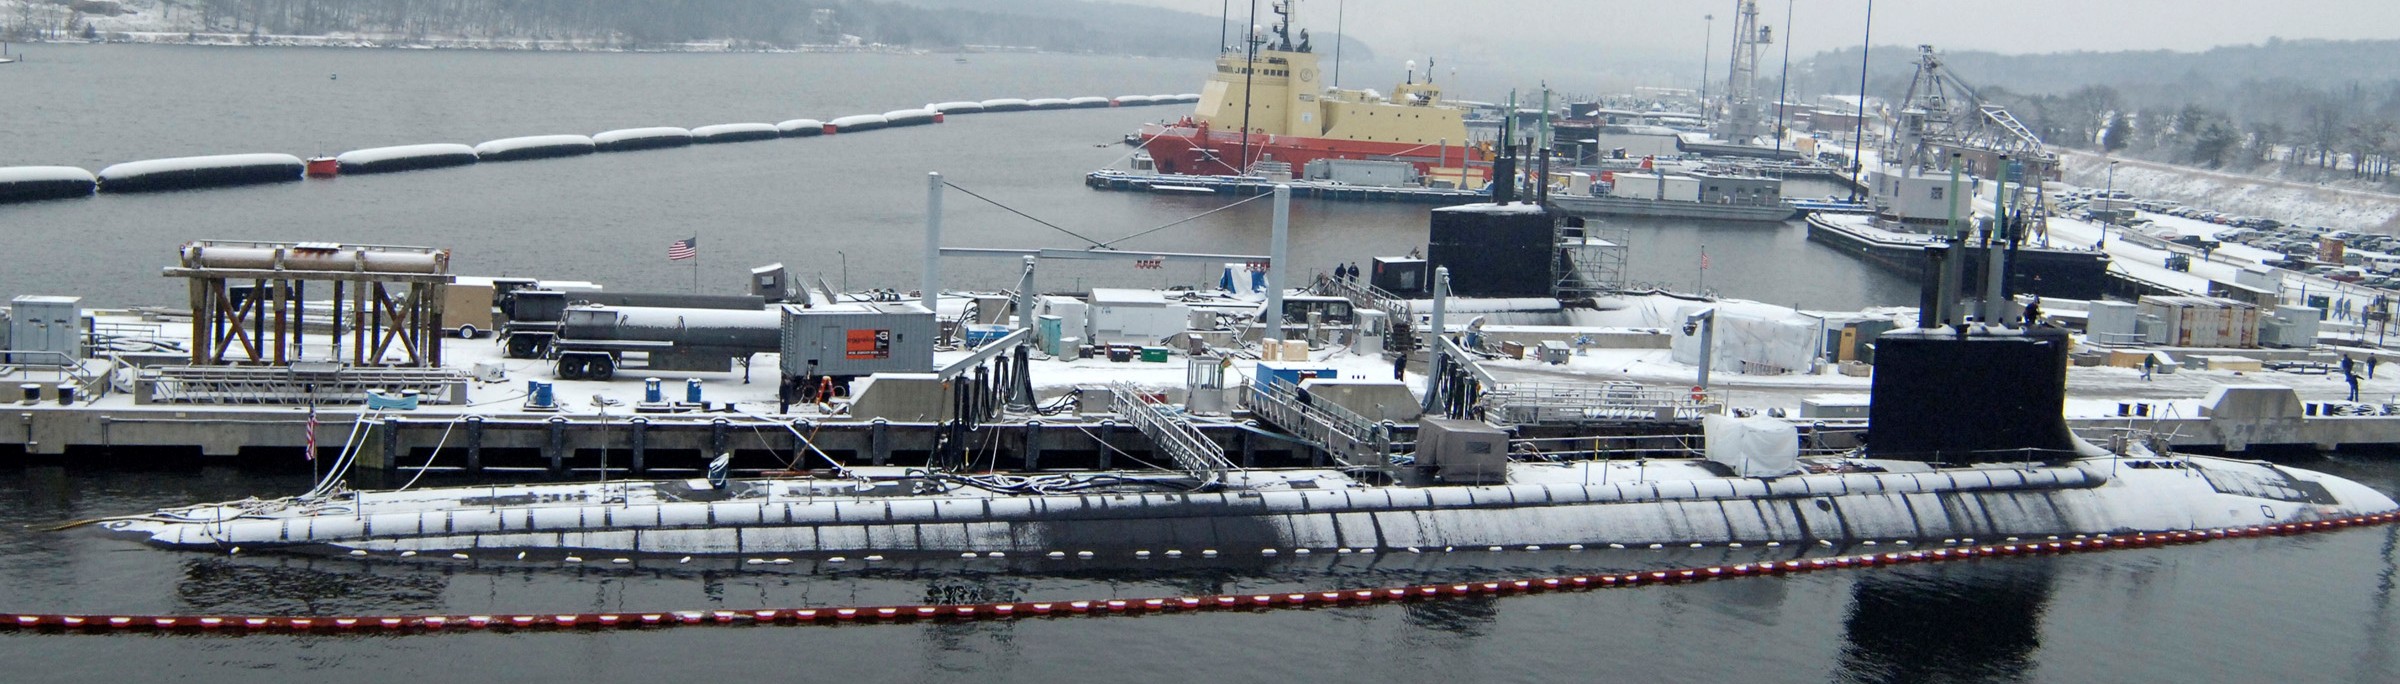 ssn-774 uss virginia attack submarine navy 2007 25